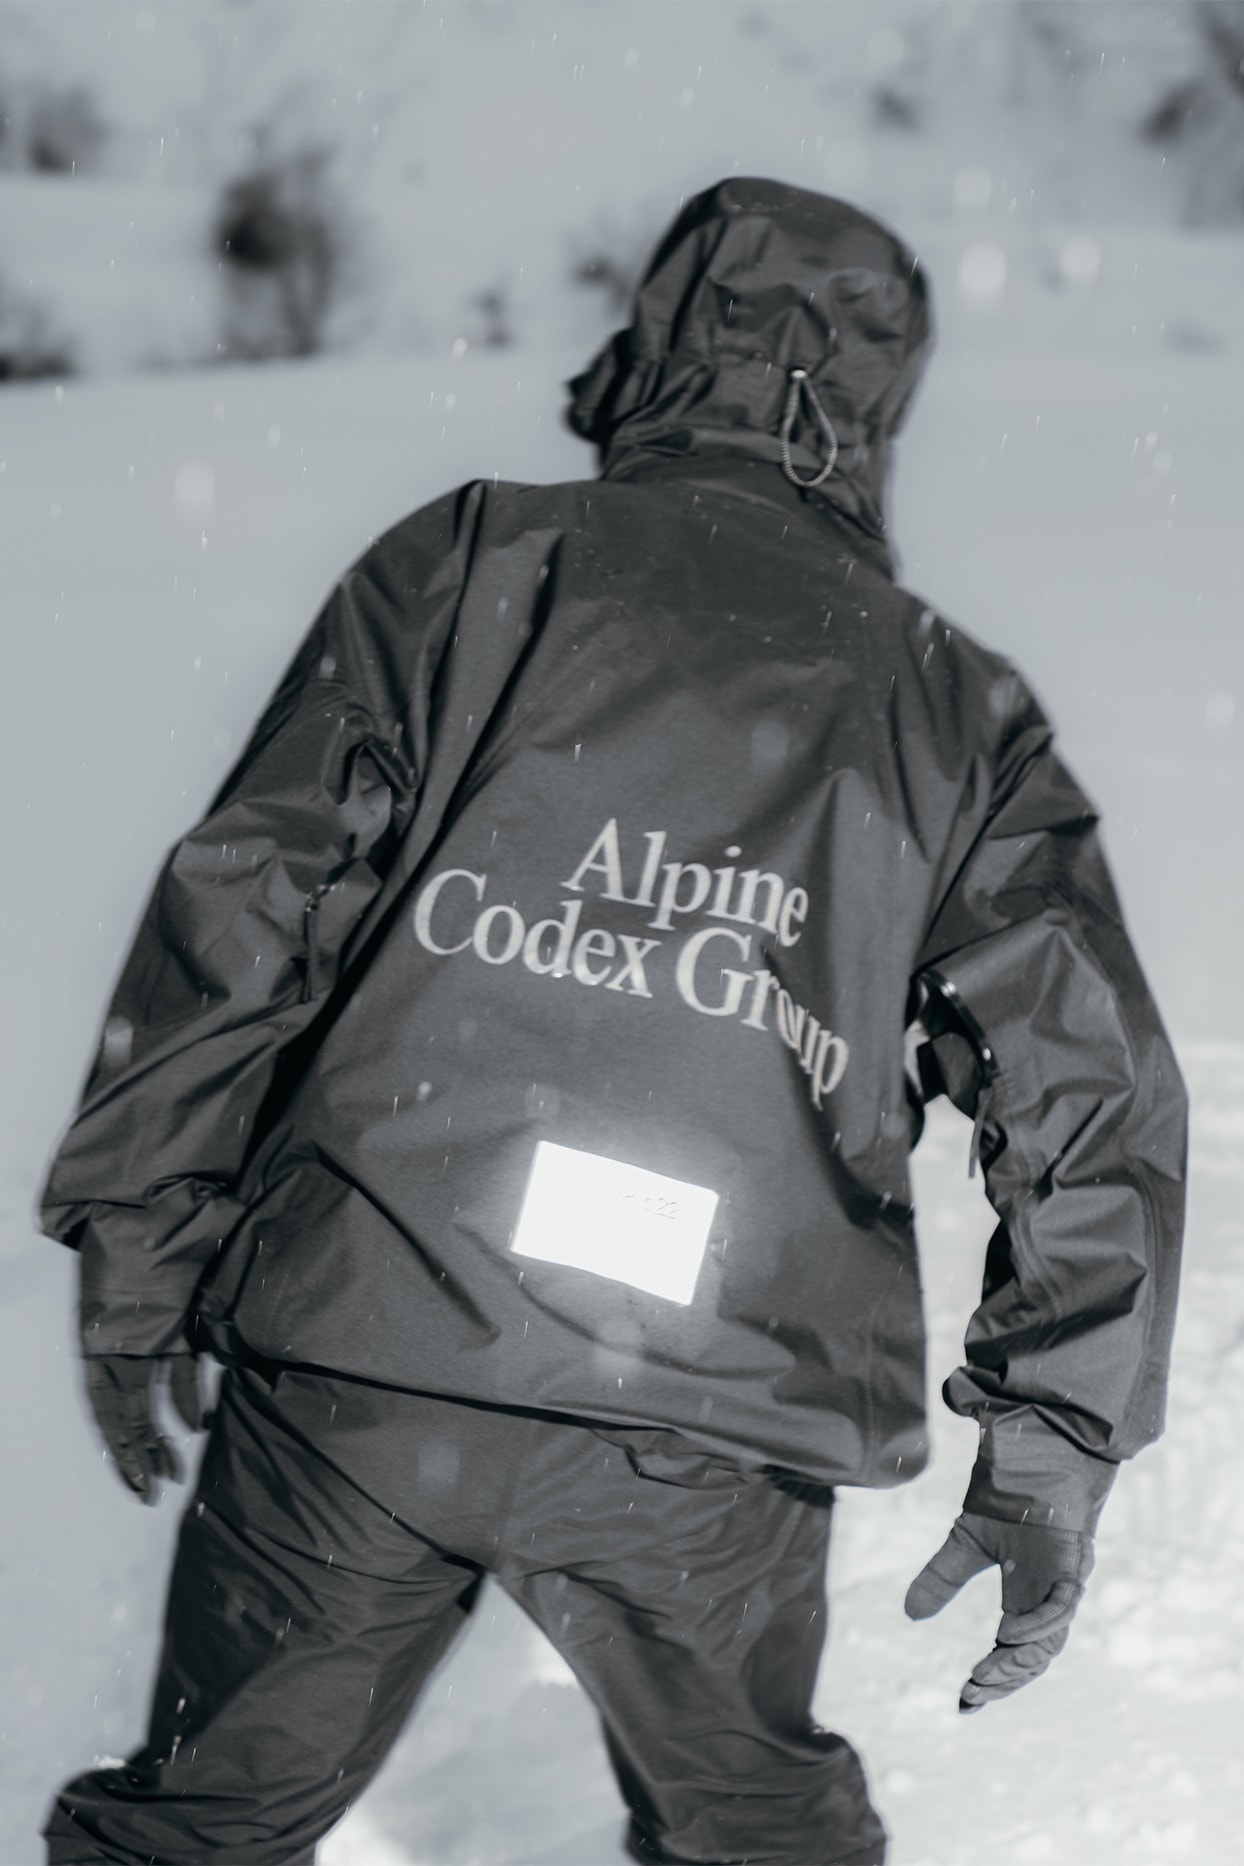 日本户外品牌 Goldwin 为虚拟徒步旅行团体「Alpine Codex Group」打造独占服饰 | Hypebeast